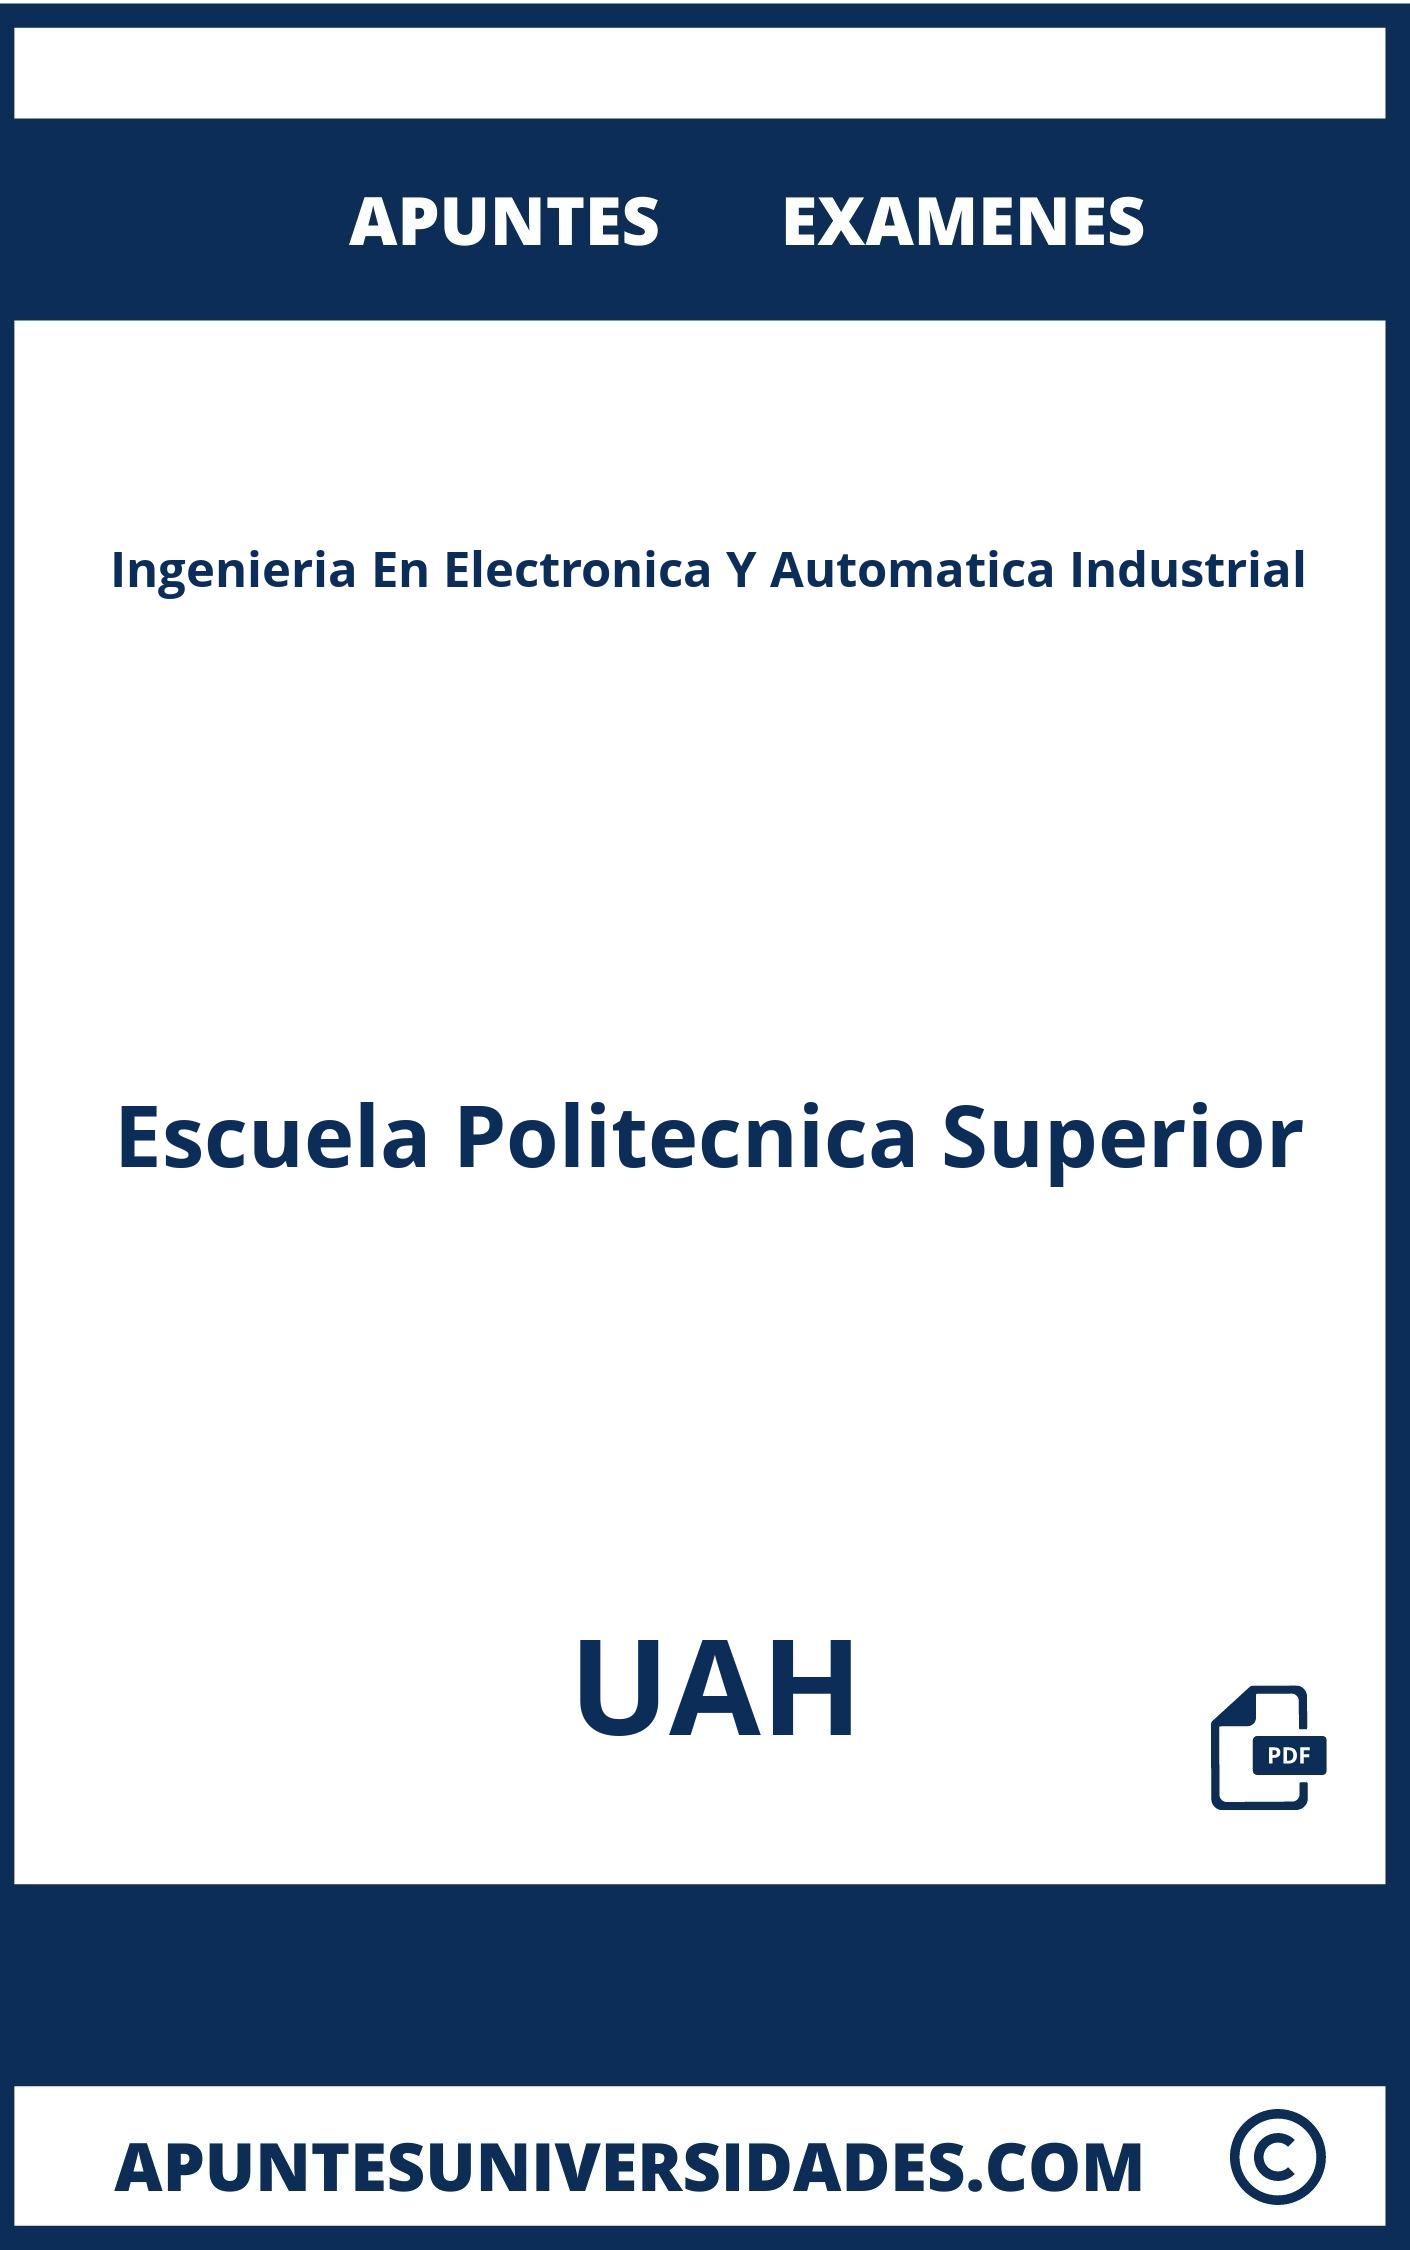 Ingenieria En Electronica Y Automatica Industrial UAH Examenes Apuntes